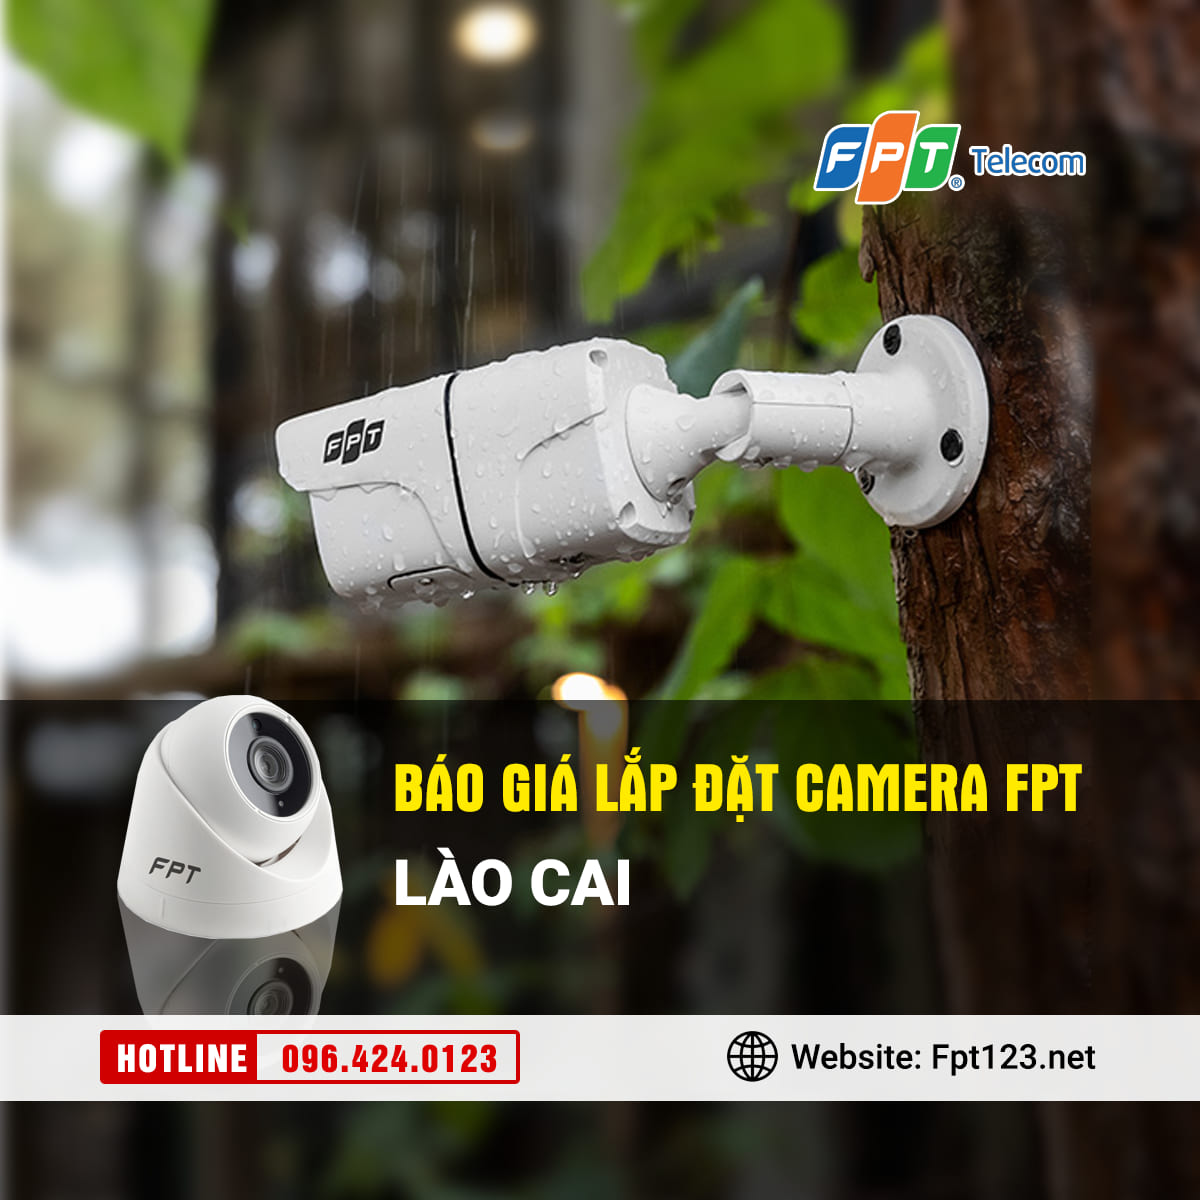 Báo giá lắp đặt camera FPT Lào Cai